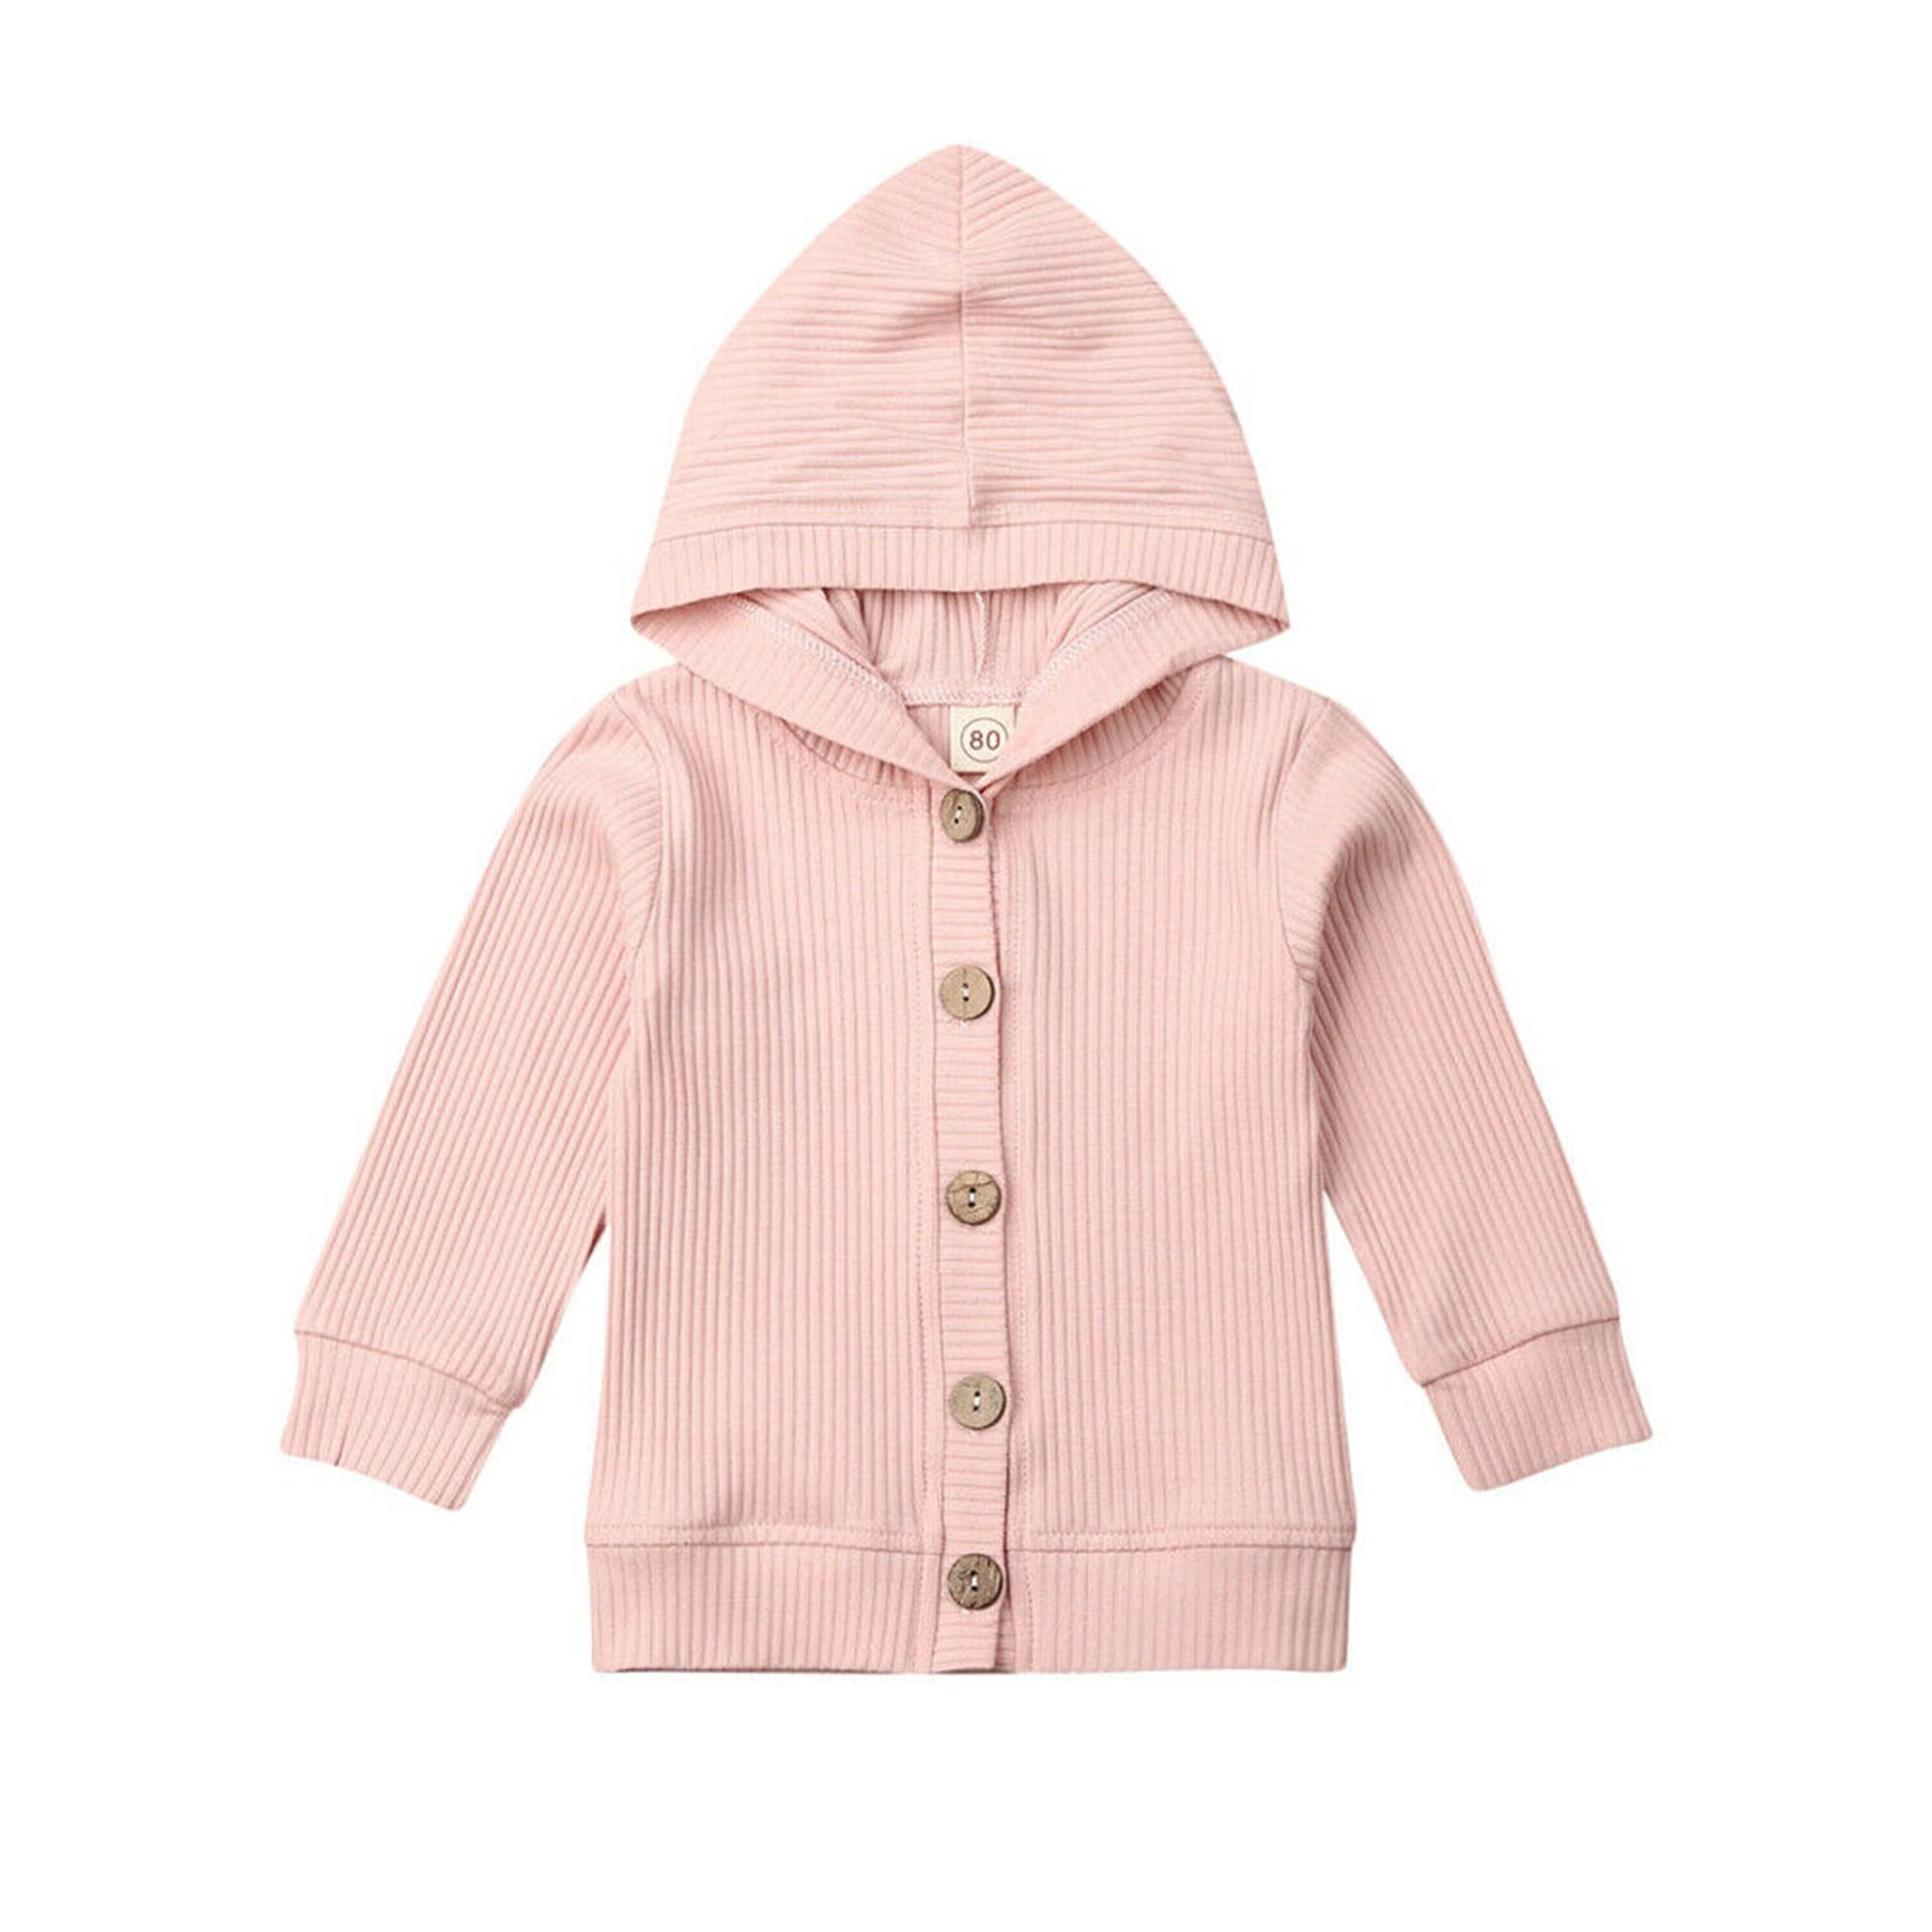 Newborn Baby Winter Warm Coat Knitted Outwear Hooded Jumpsuit Girl Boy Coat UK 